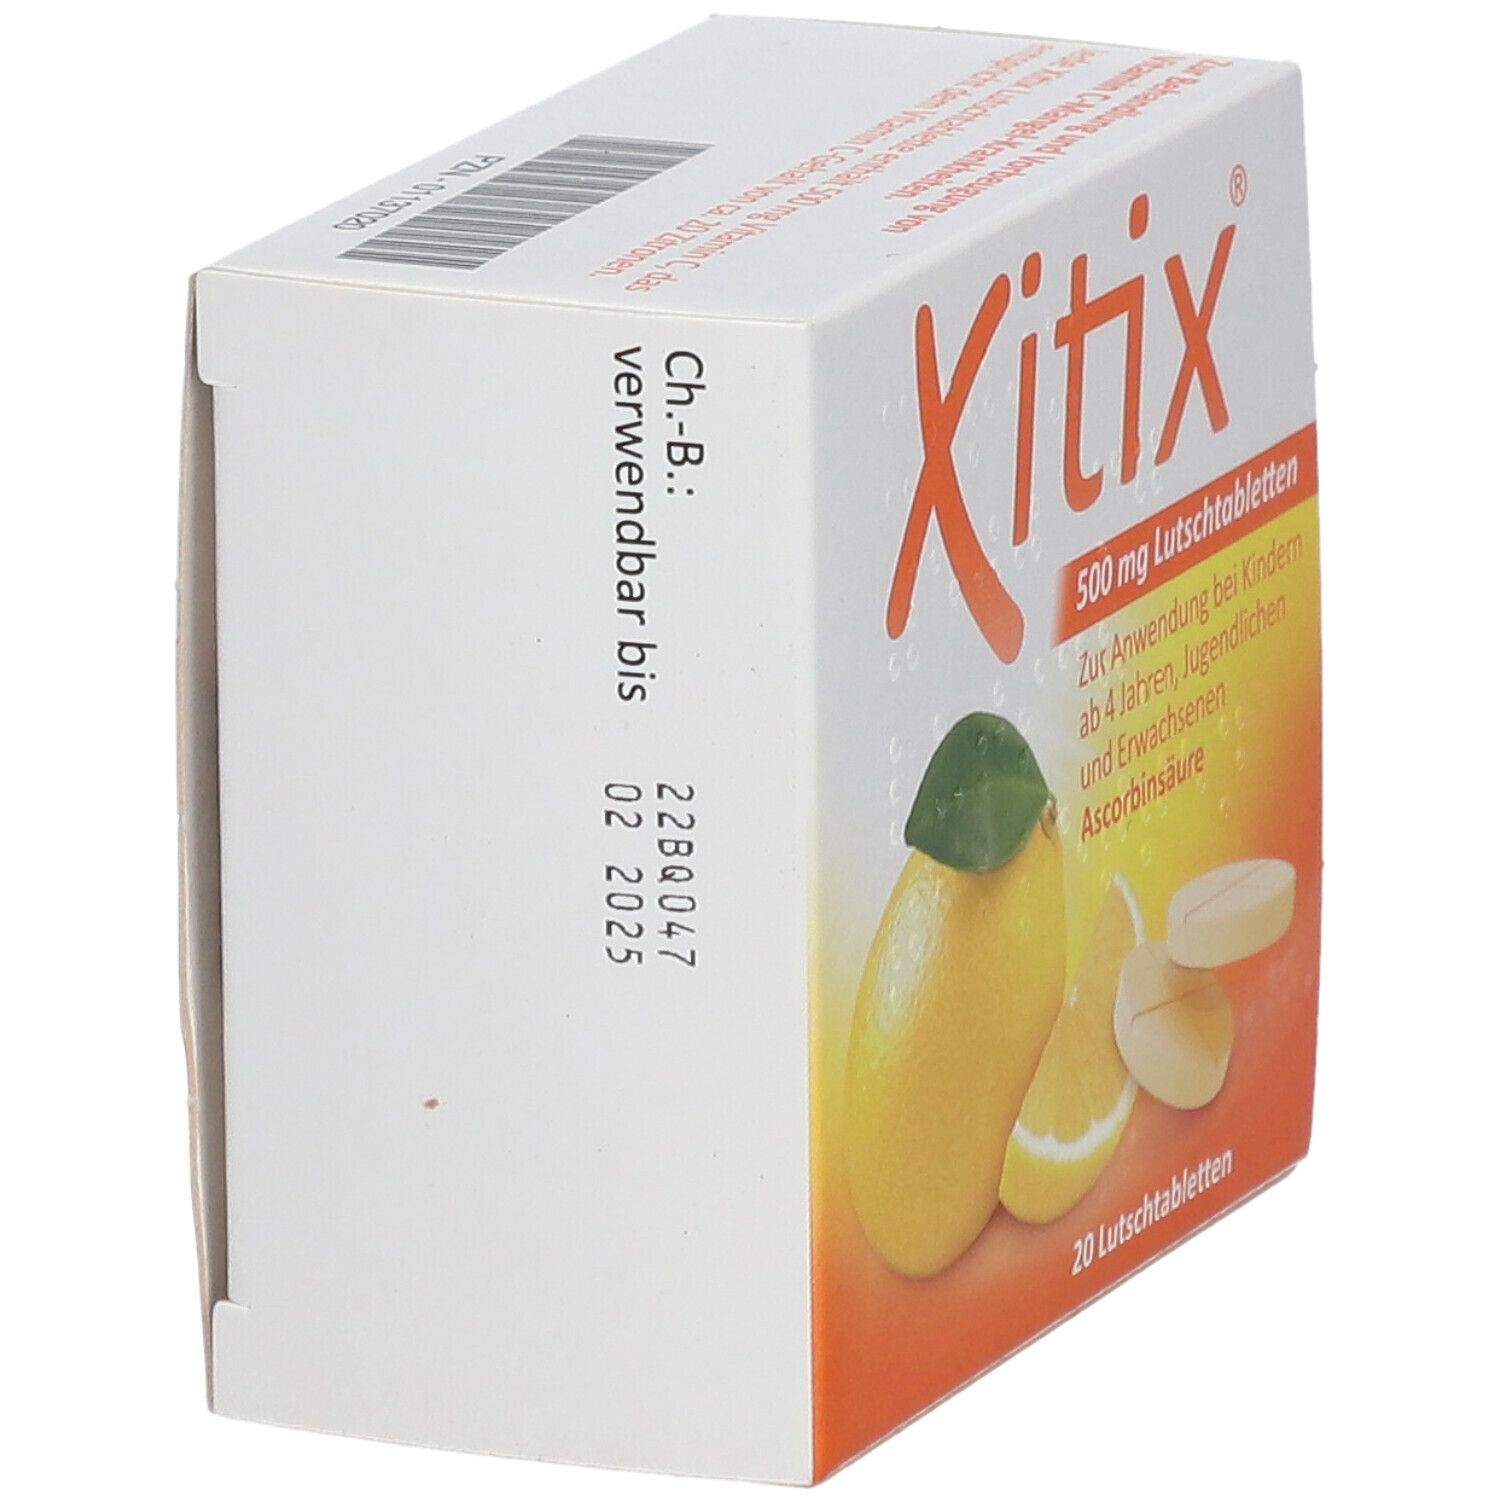 Xitix® 500 mg Lutschtabletten